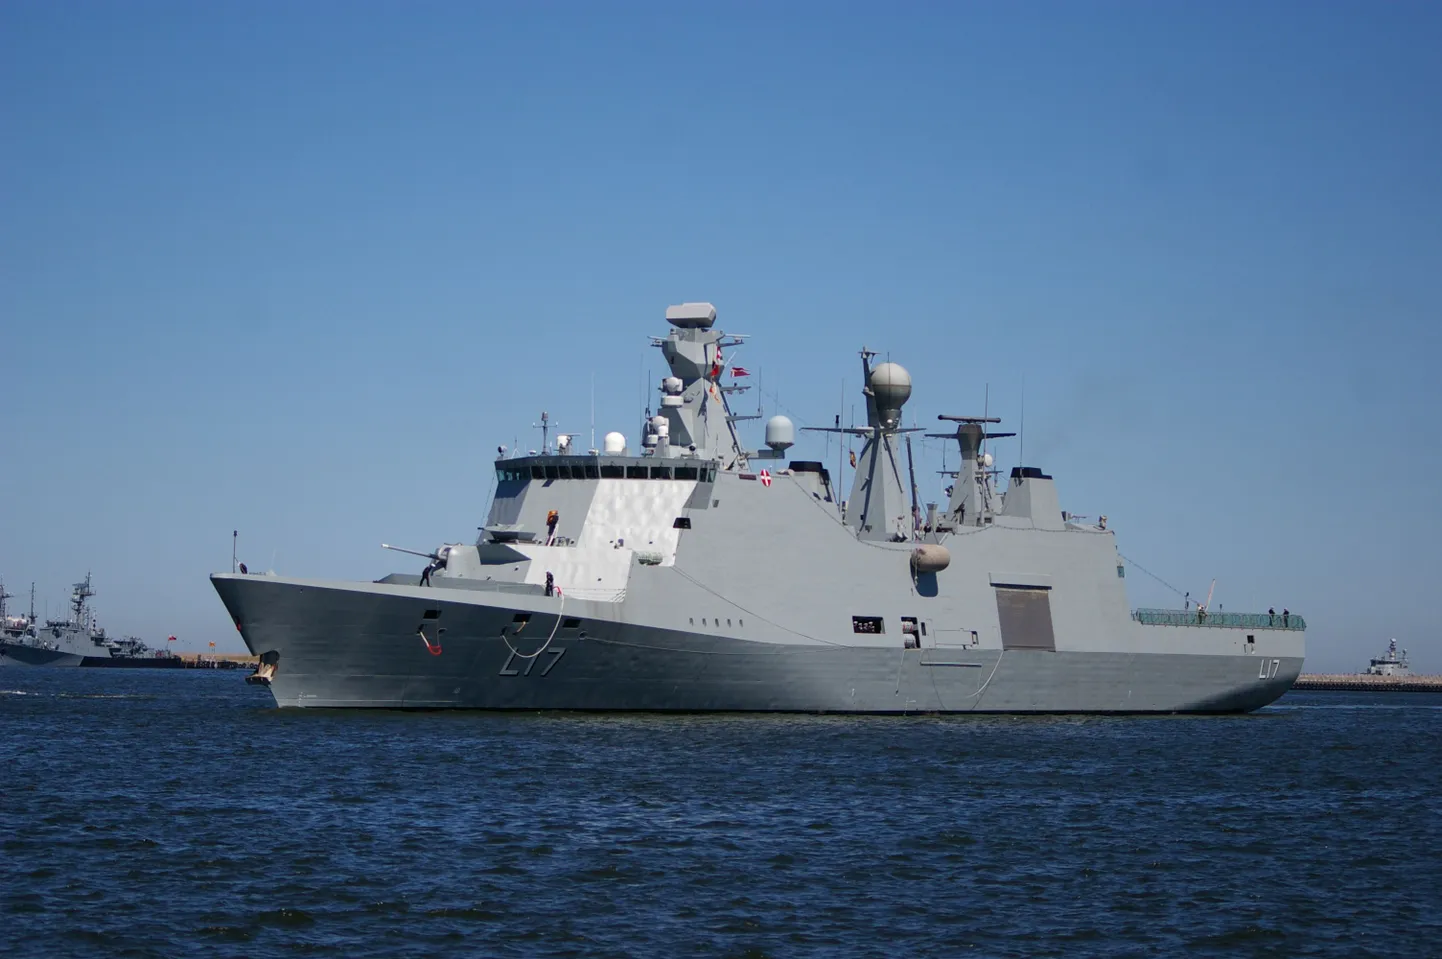 Taani sõjalaev Esbern Snare.